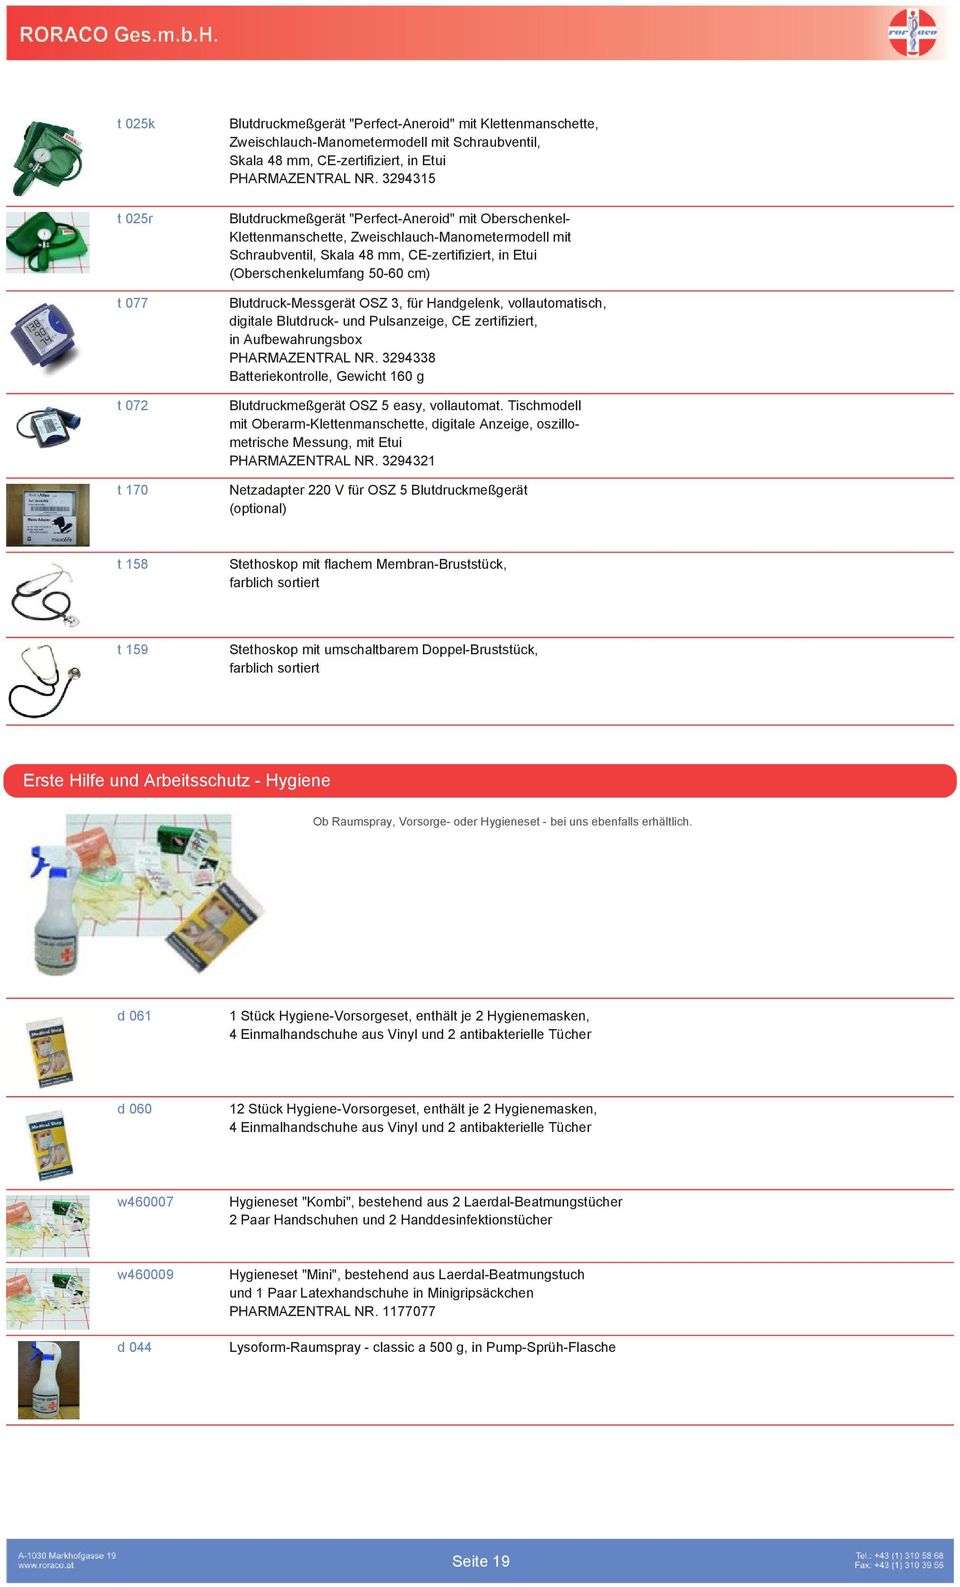 Blutdruck-Messgerät OSZ 3, für Handgelenk, vollautomatisch, digitale Blutdruck- und Pulsanzeige, CE zertifiziert, in Aufbewahrungsbox PHARMAZENTRAL NR.